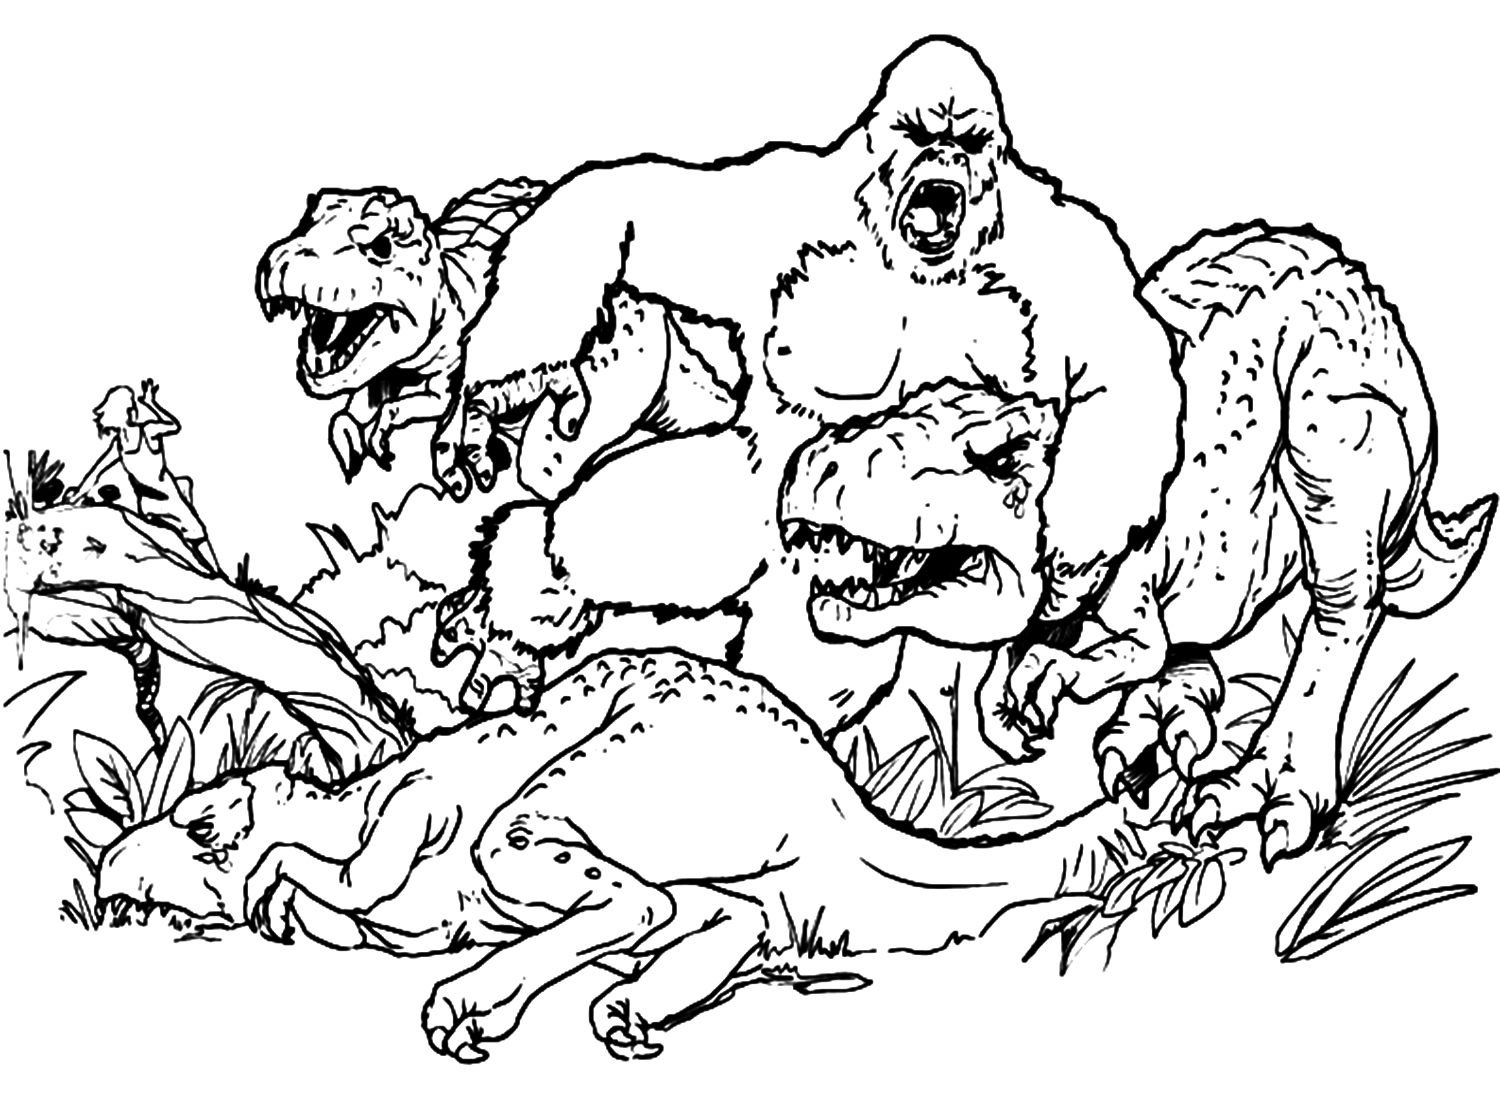 King Kong en dinosaurussen uit King Kong